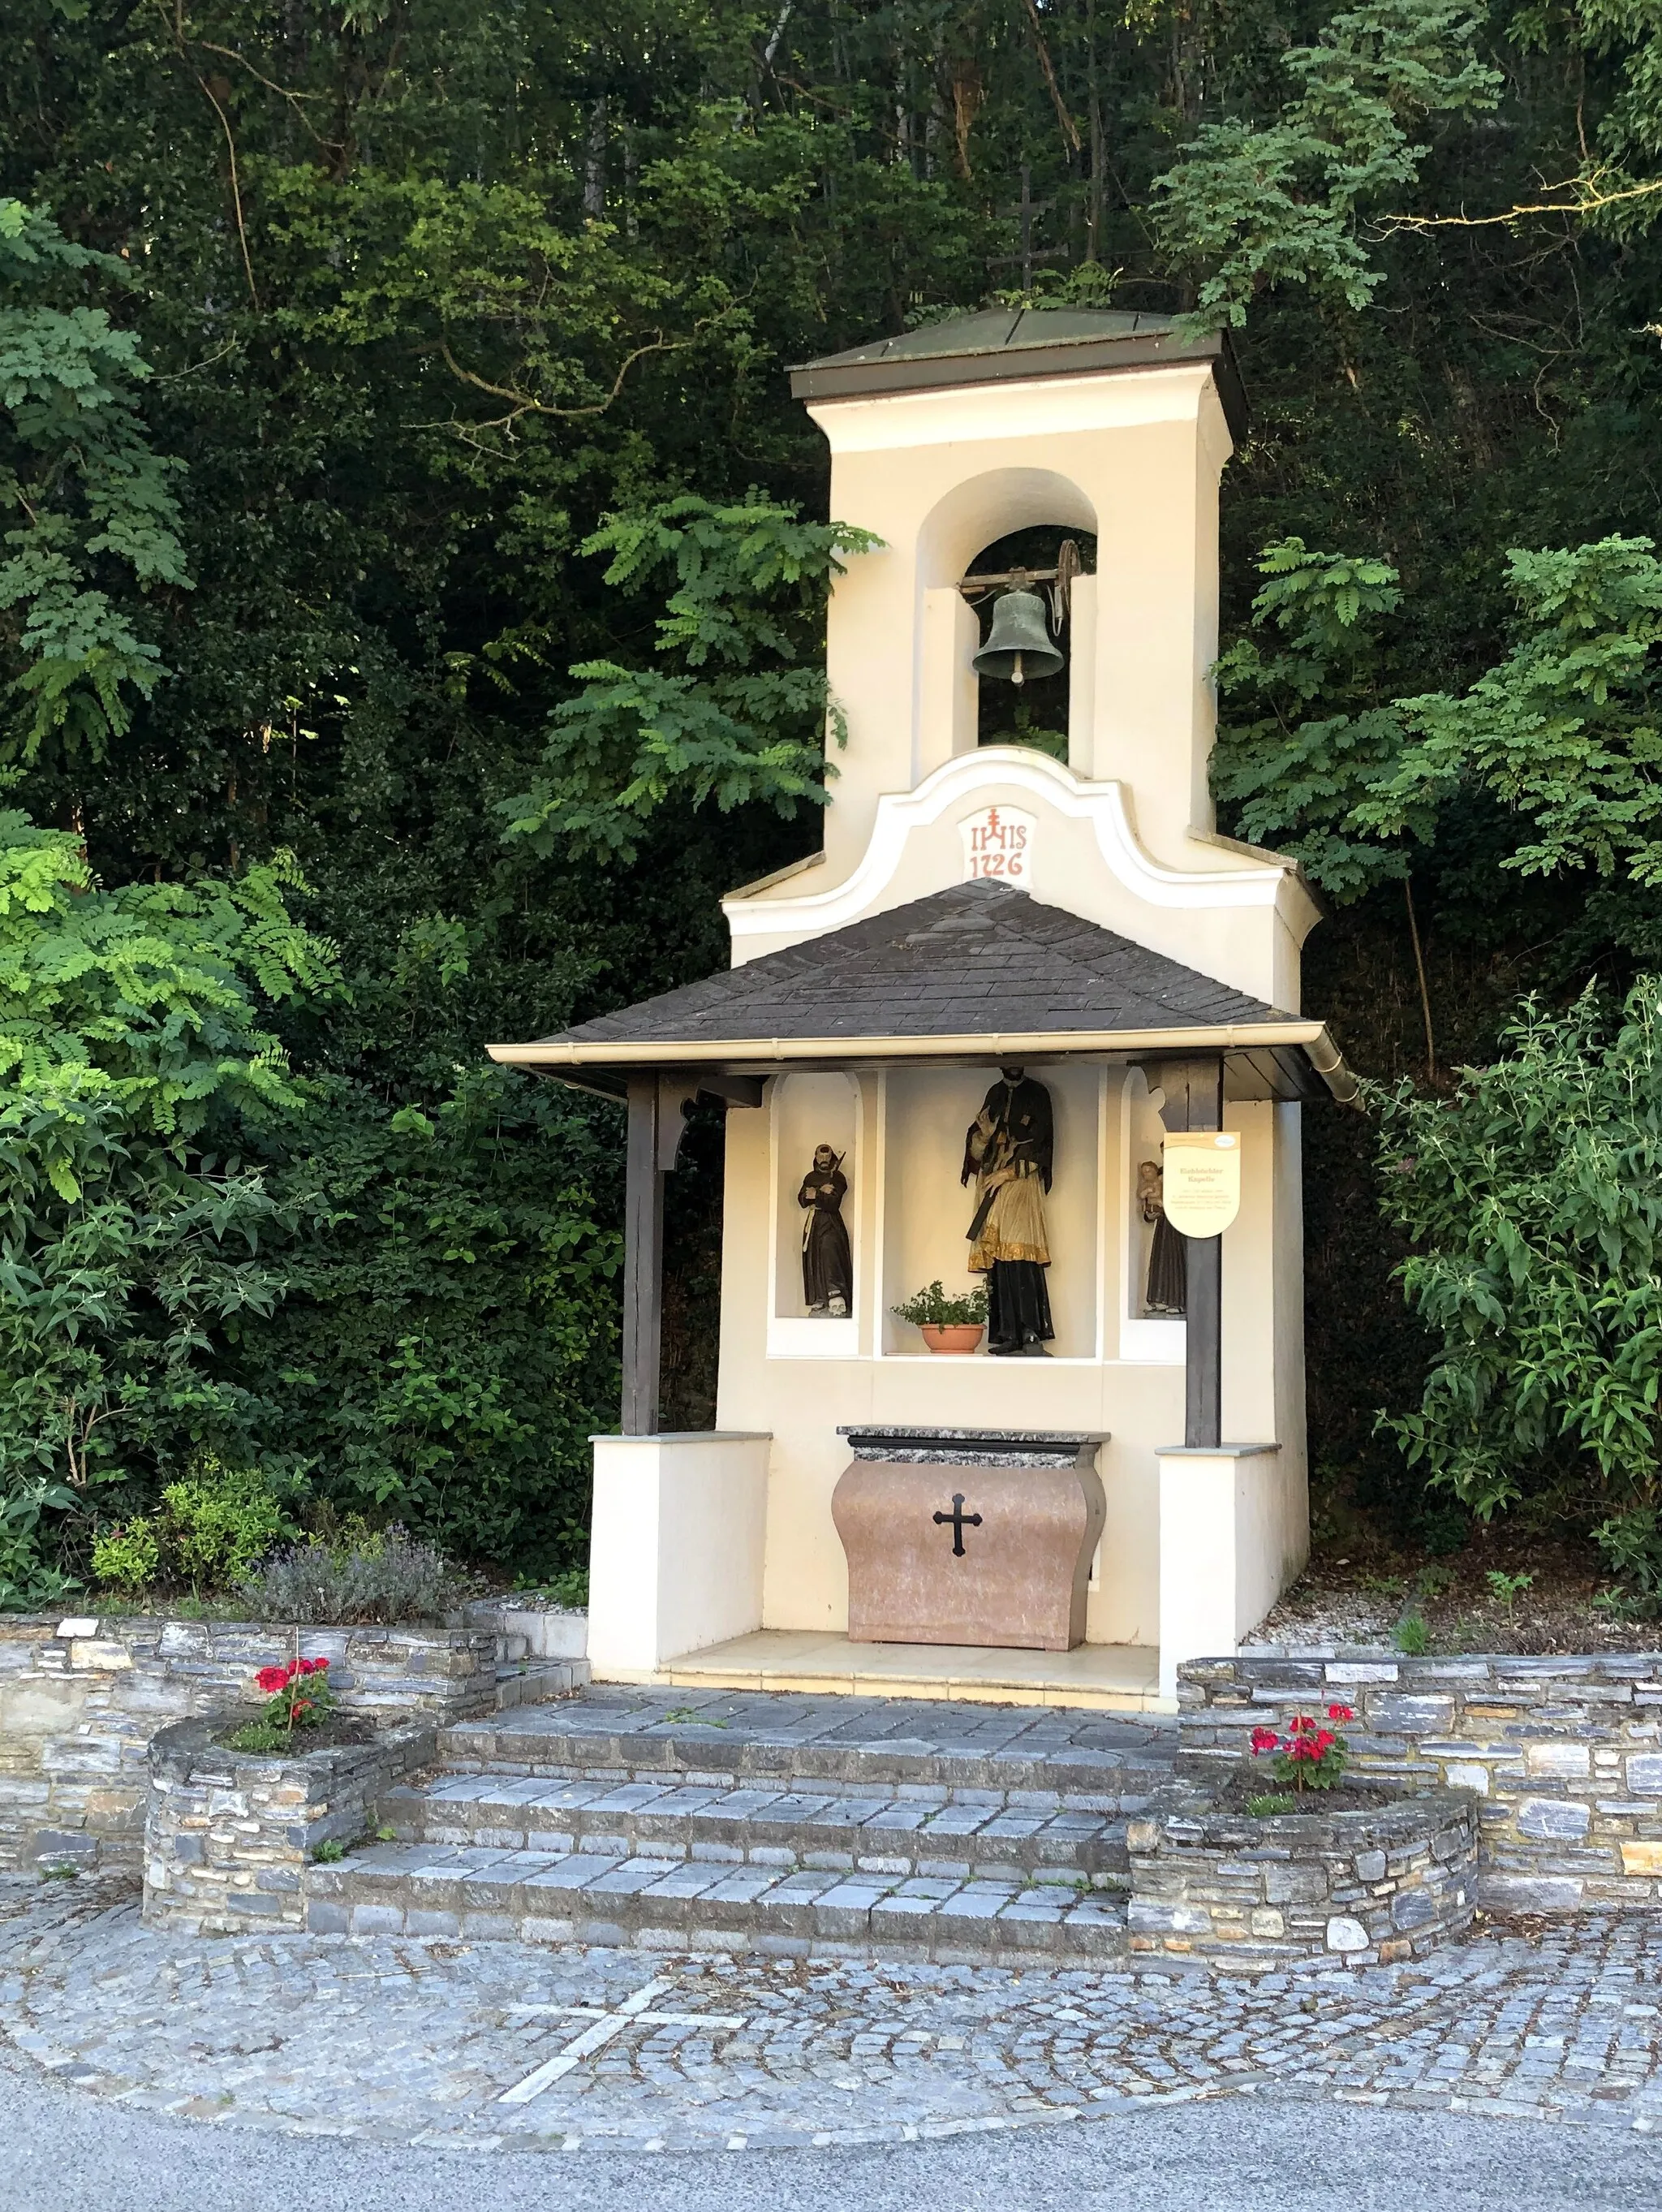 Photo showing: Wayside shrine in Eichbüchl, Katzelsdorf municipality, Lower Austria